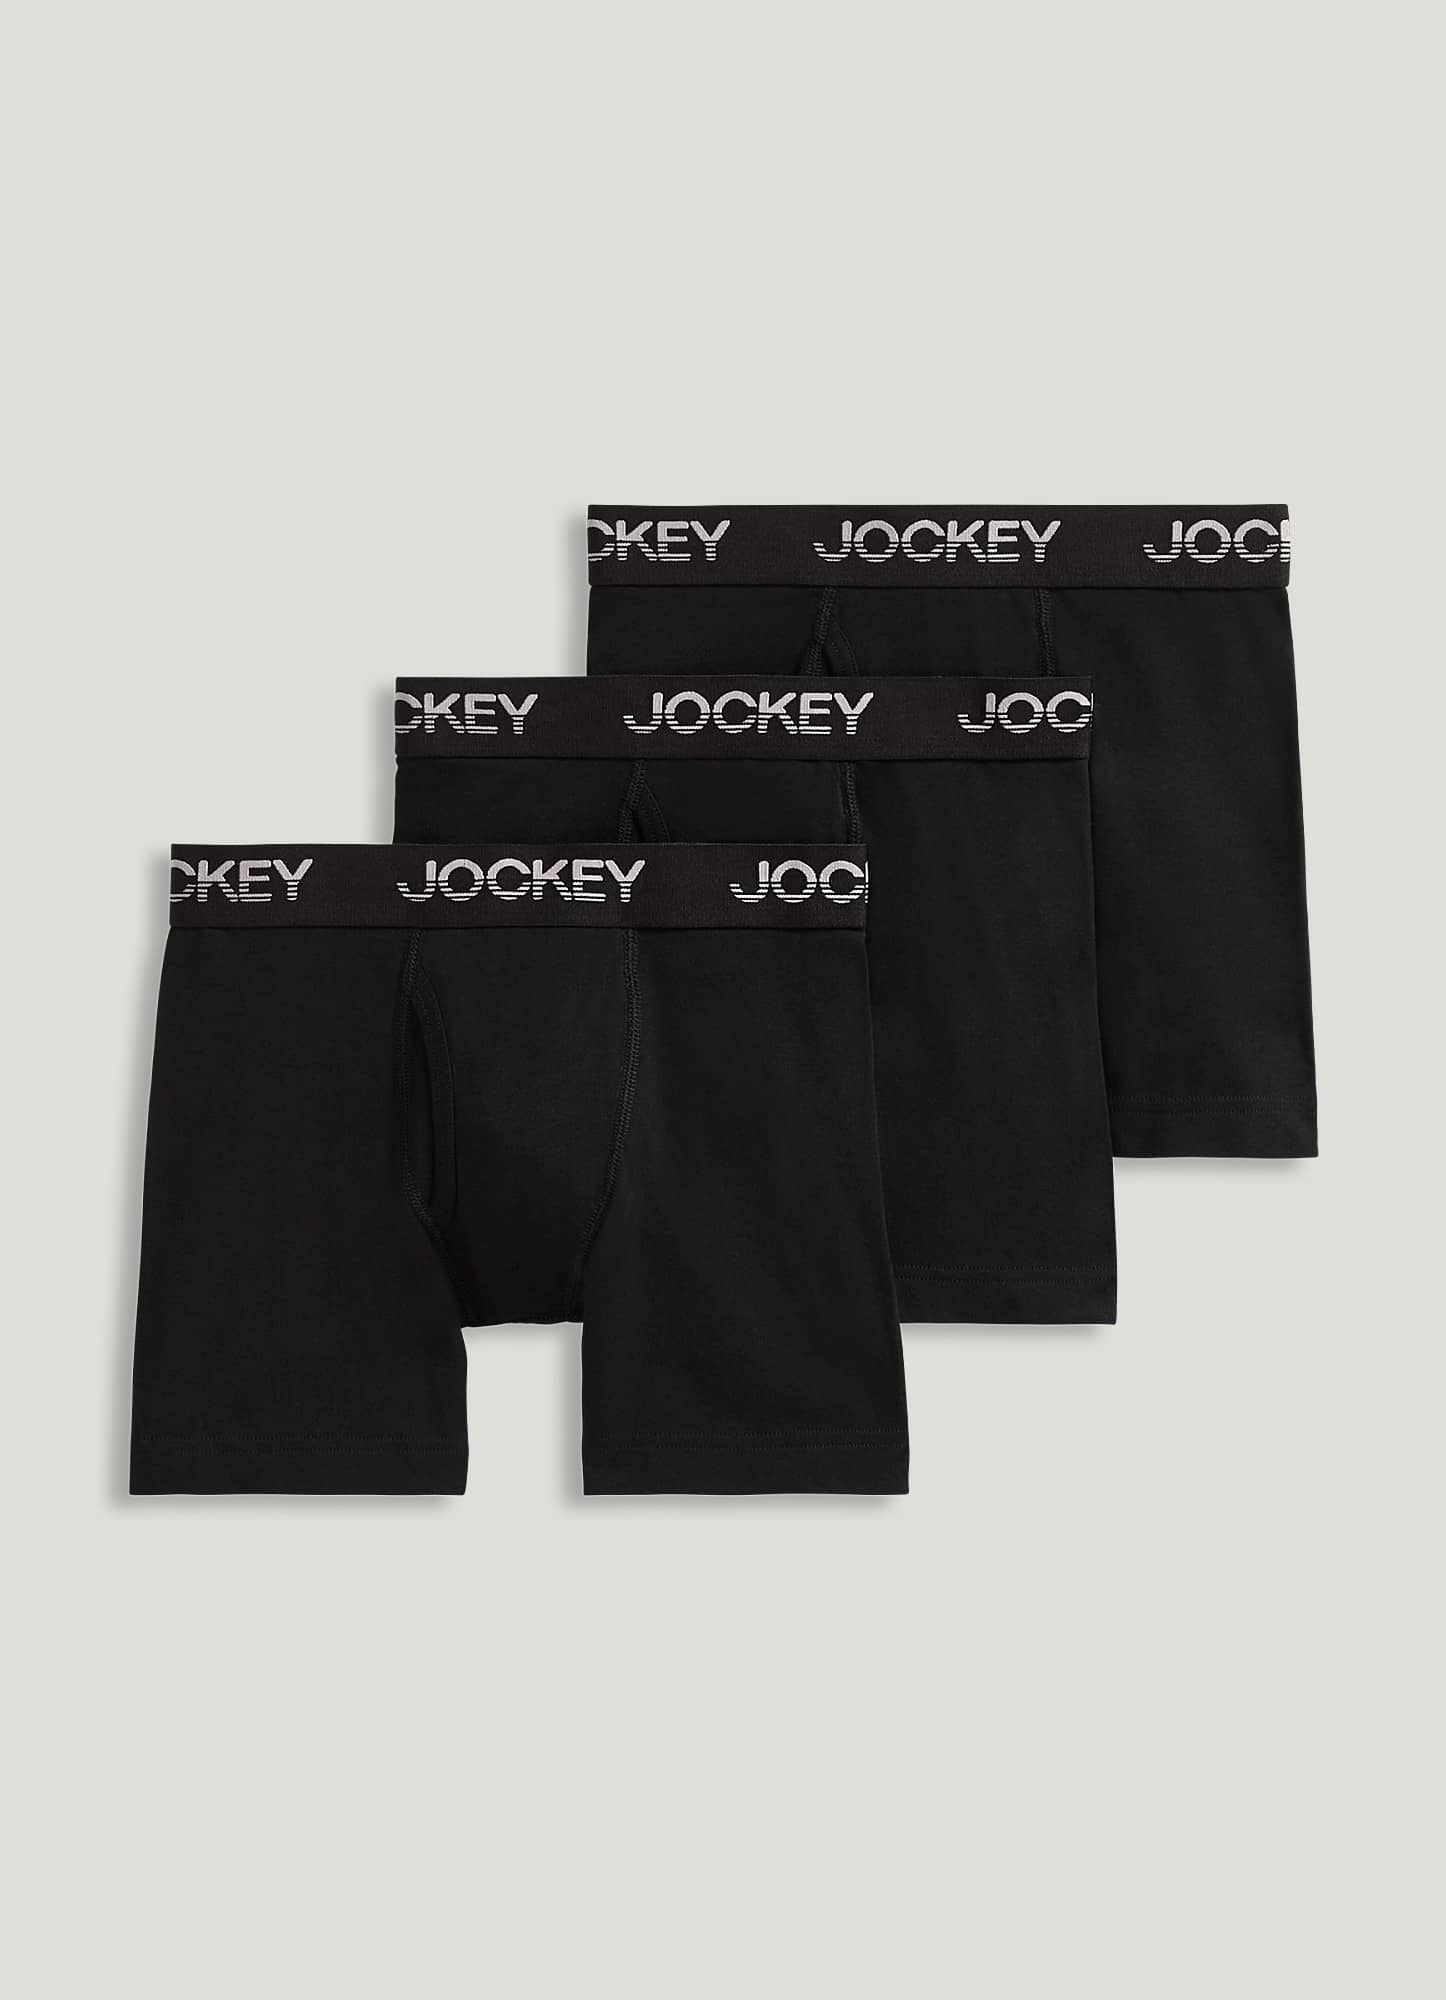 Kids' Jockey Underwear & Socks